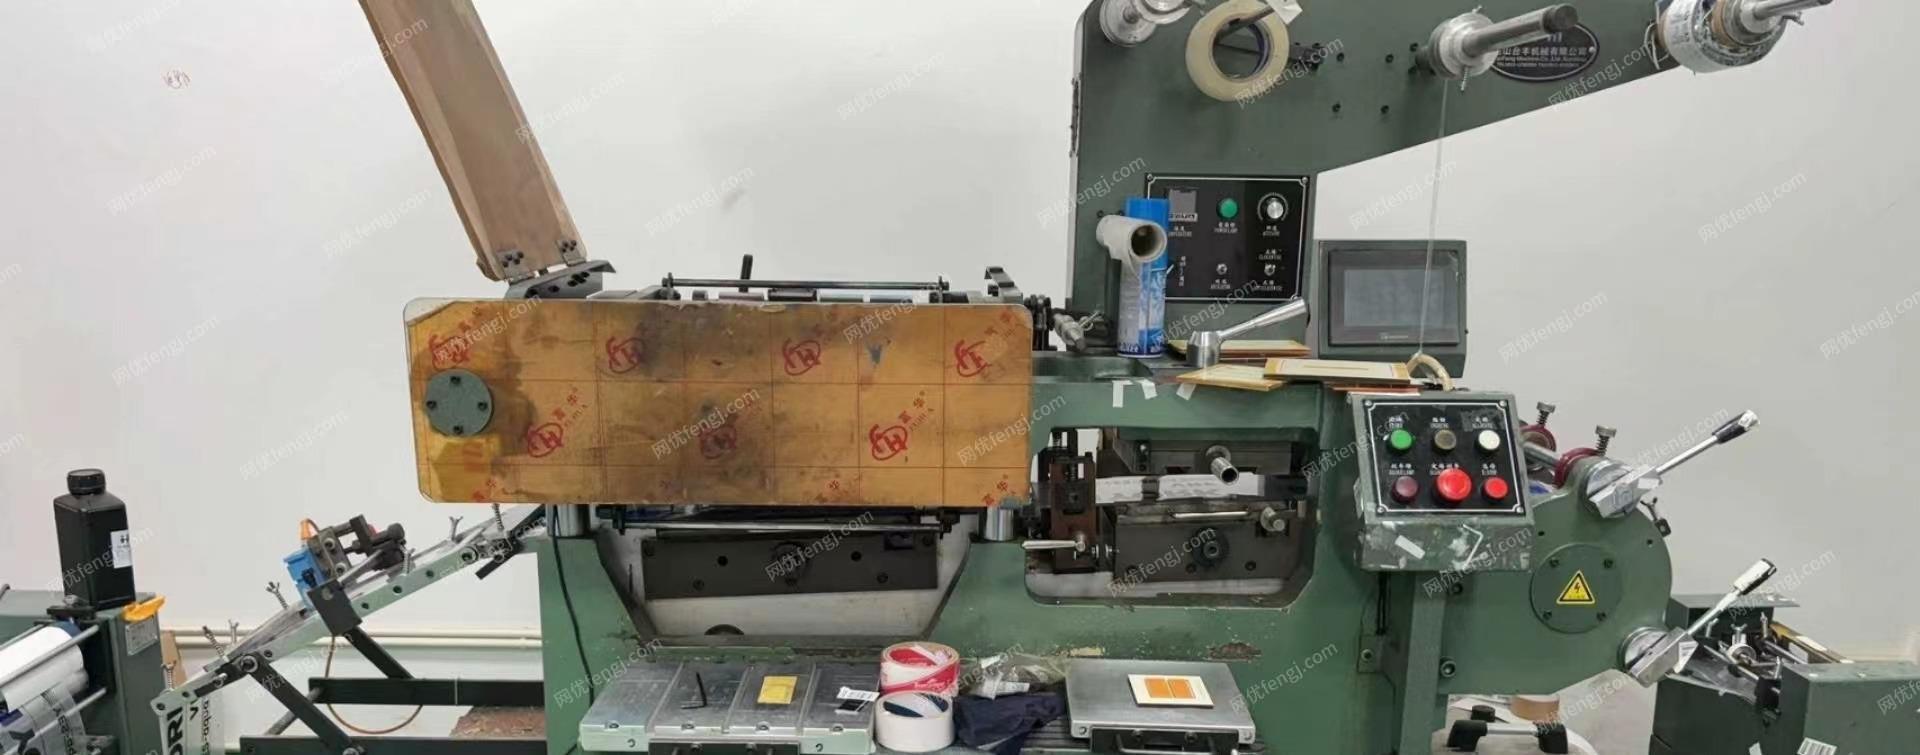 江苏苏州出售全自动丝网印刷机 半自动丝网印刷机